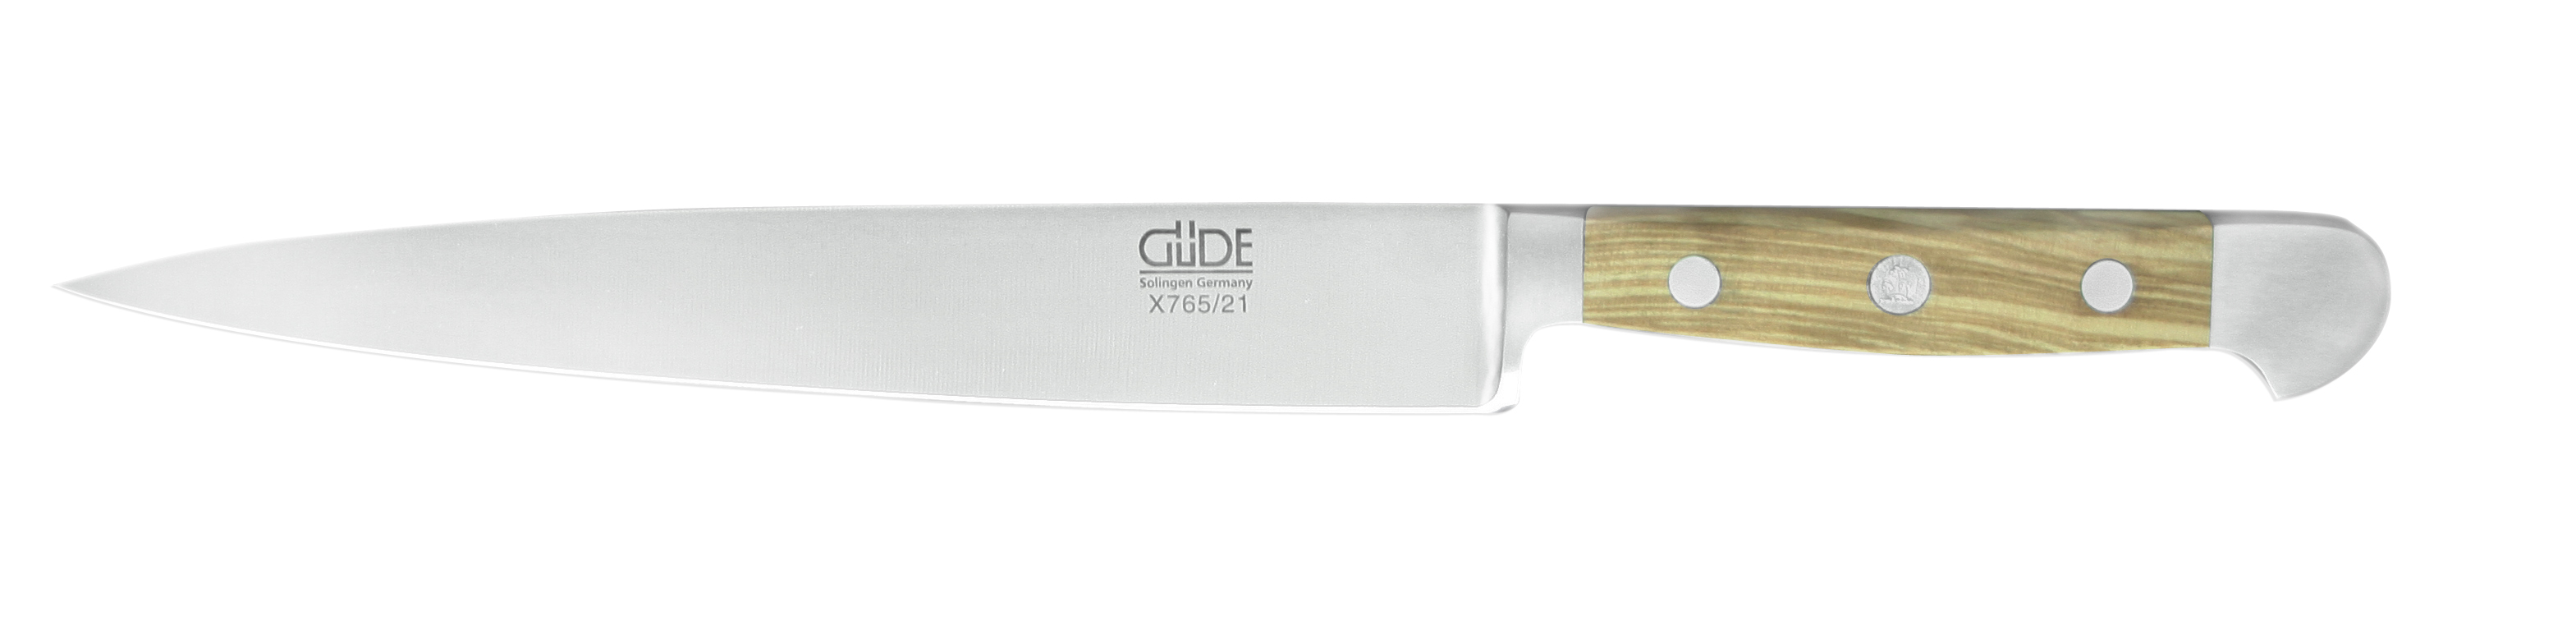 Güde Alpha Olive Schinkenmesser 21 cm / CVM-Messerstahl mit Griffschalen aus Olivenholz